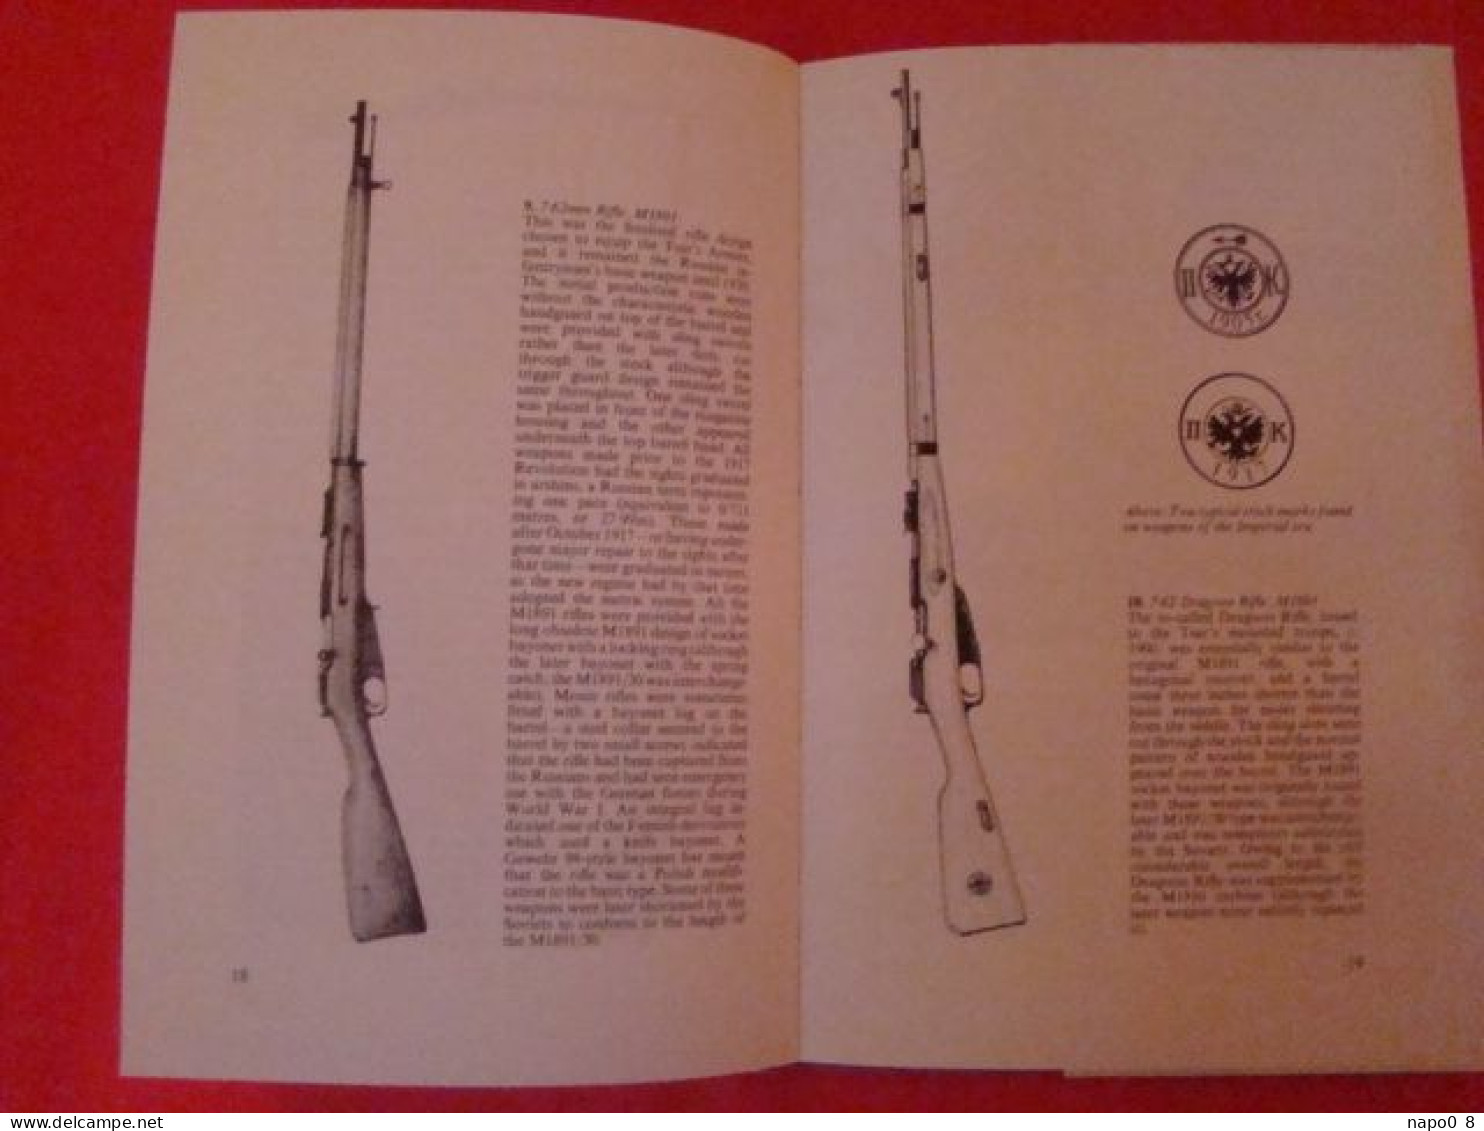 Russian Infantry Weapons Of World War 2 " AJ Barker & John Walter " - Inglés